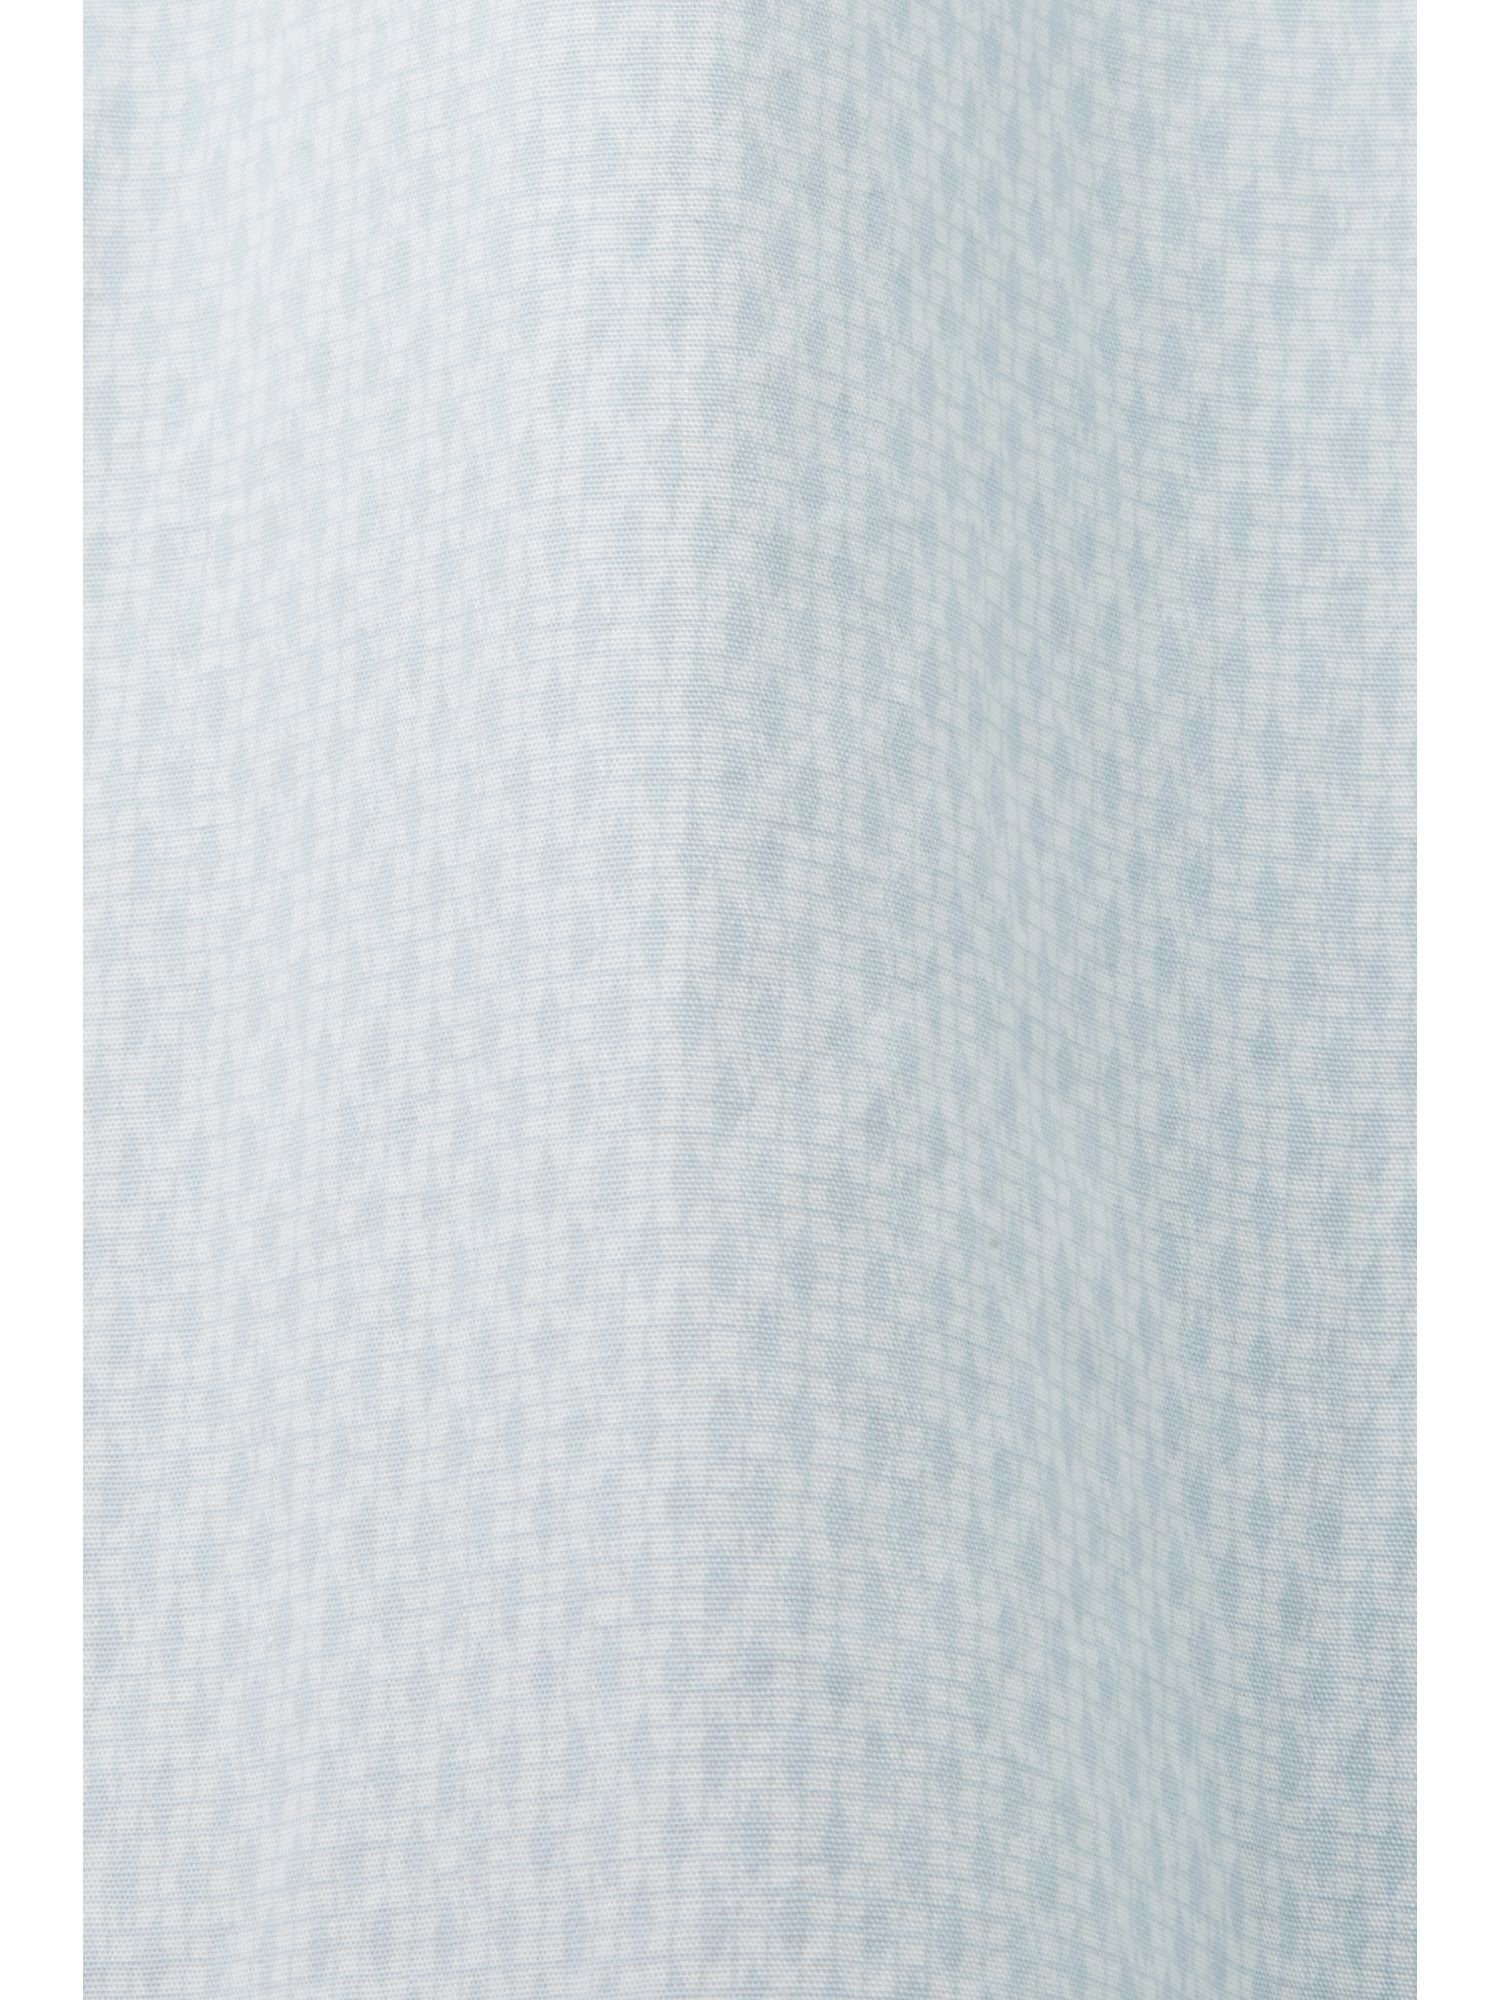 Businesshemd Passform Esprit in Collection Print mit WHITE bequemer Baumwollhemd